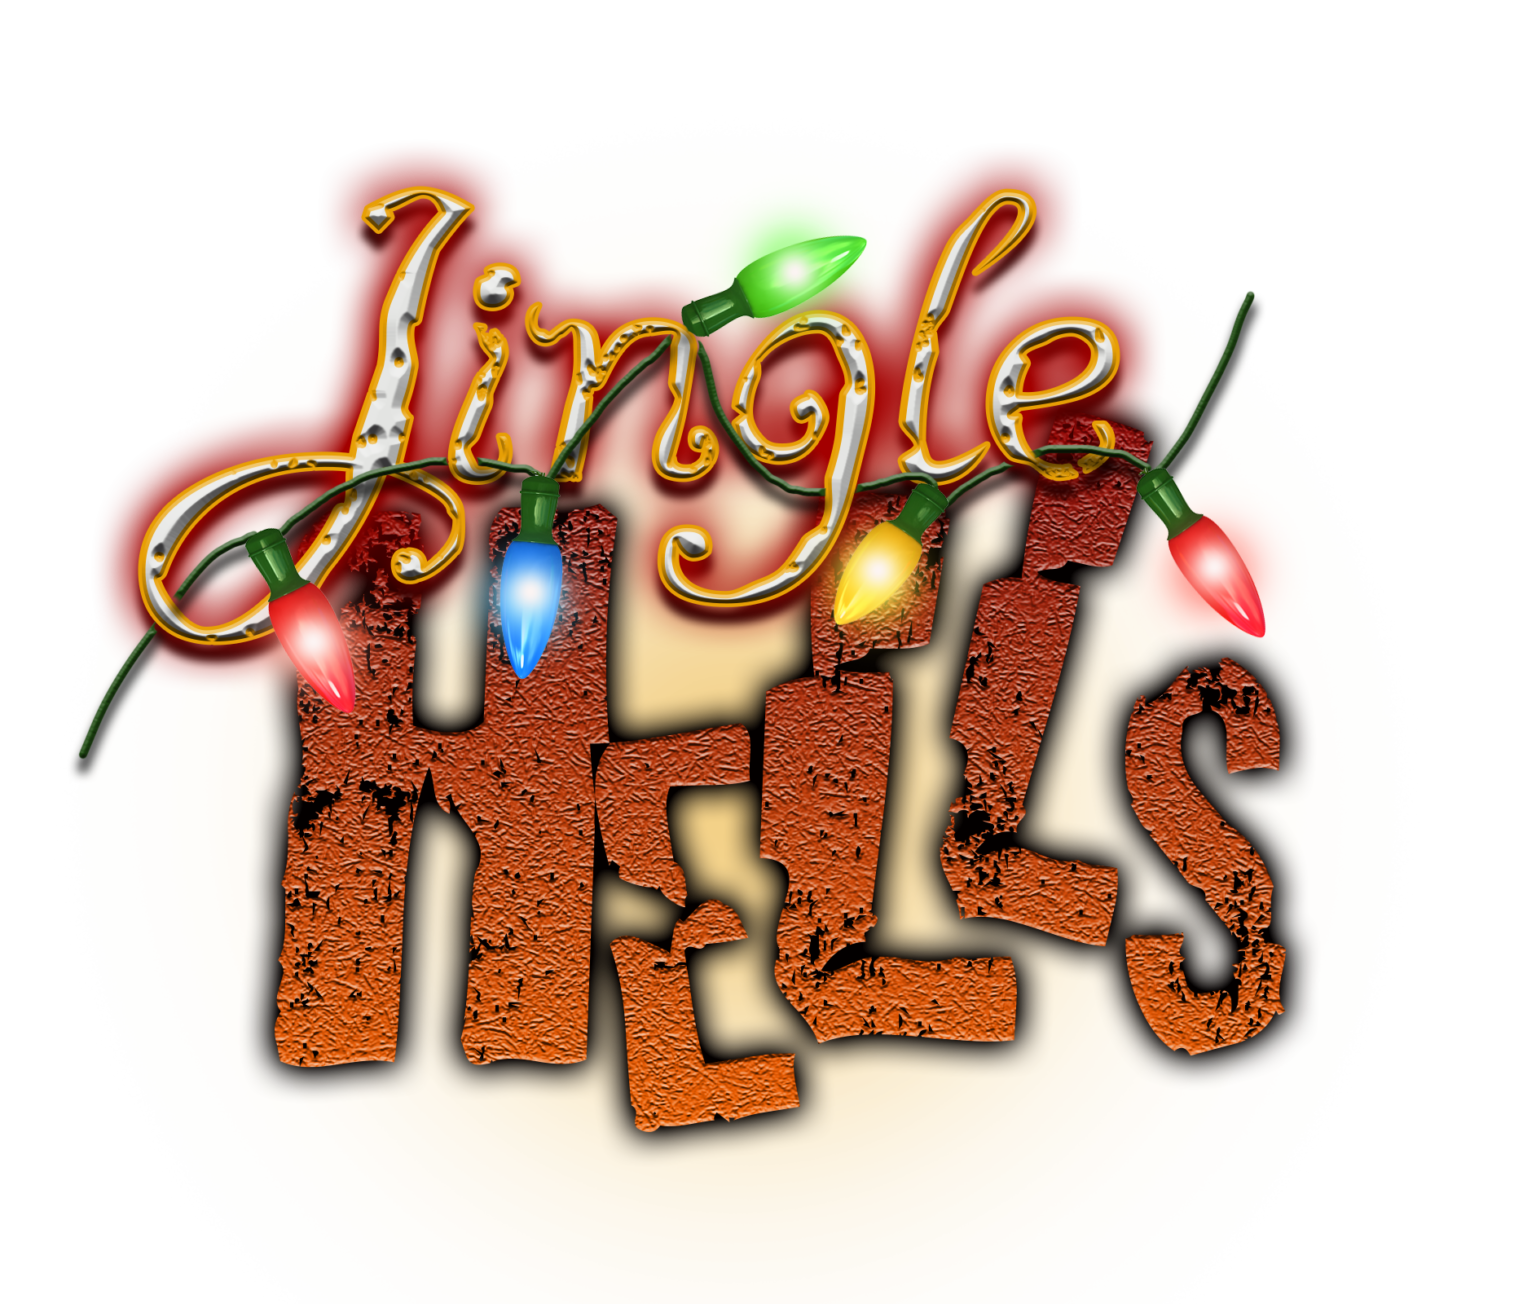 Jingle Hells logo 2022